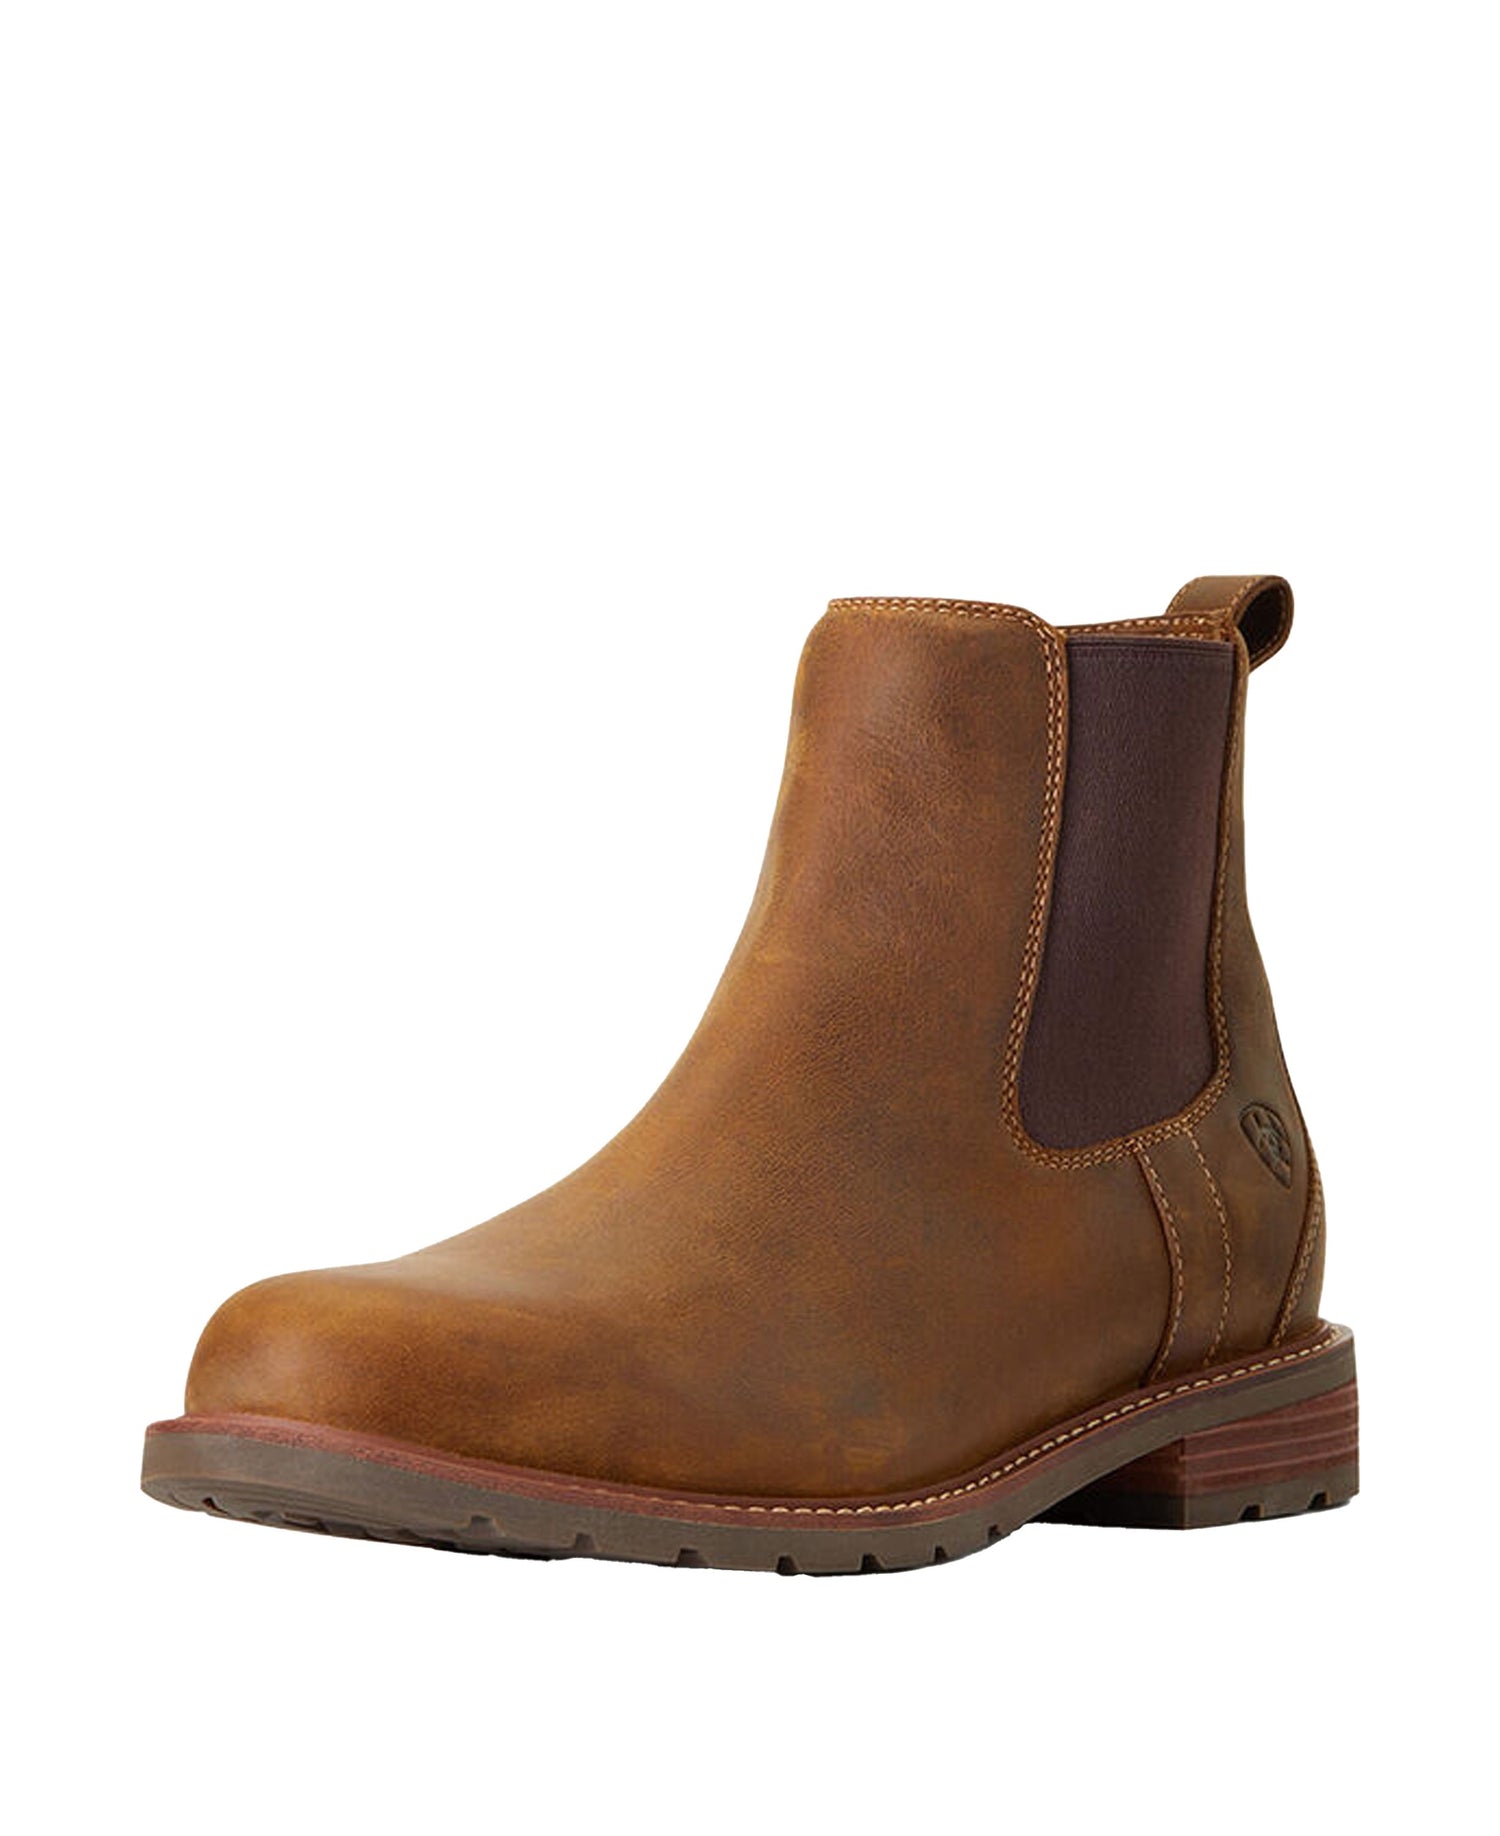 Wexford Waterproof Boot - Weathered Brown